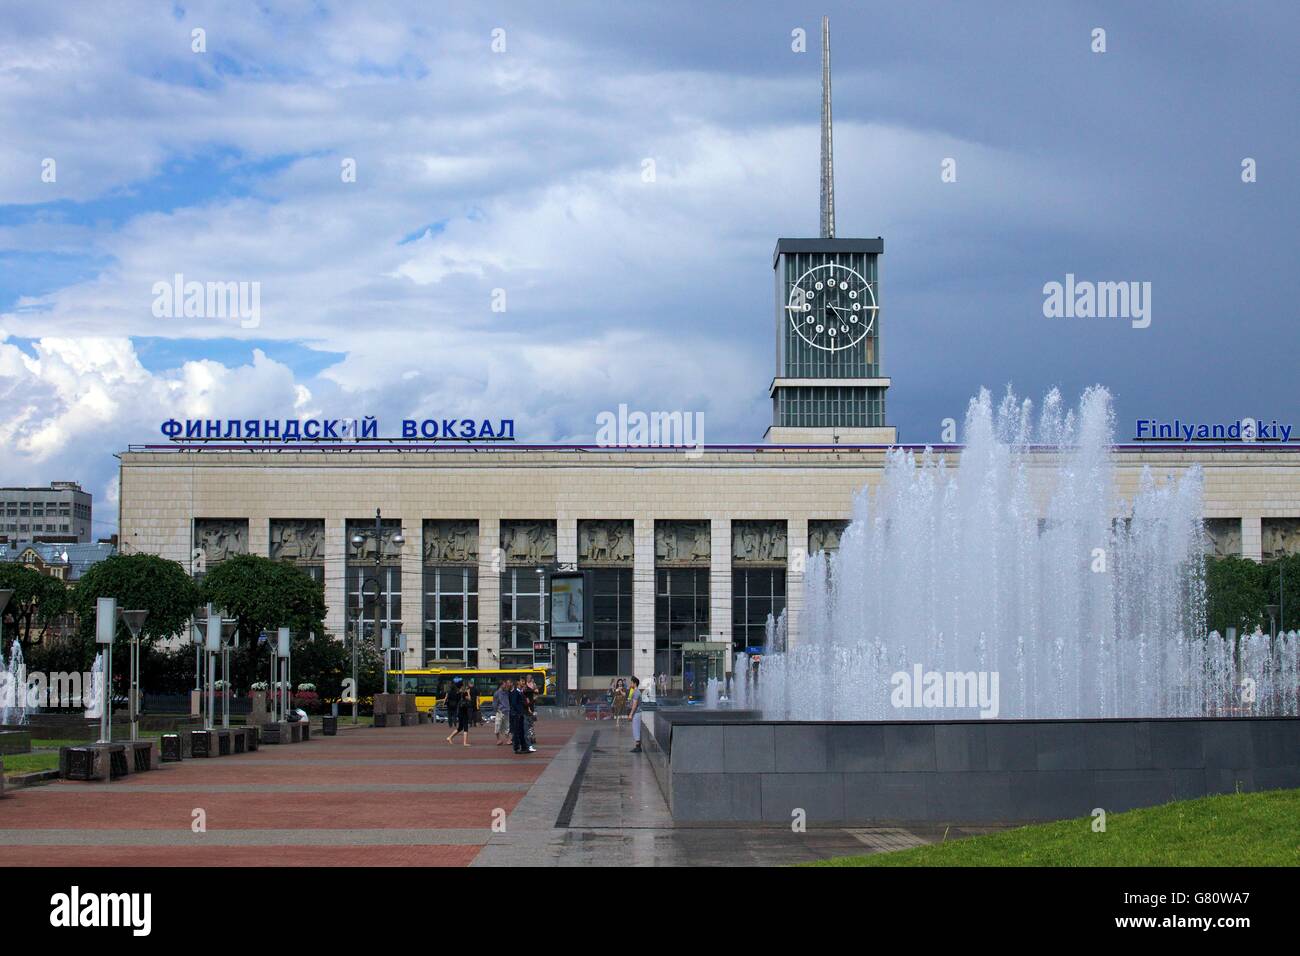 La gare finlyandskiy ou la Finlande, St Petersbourg, Russie Banque D'Images